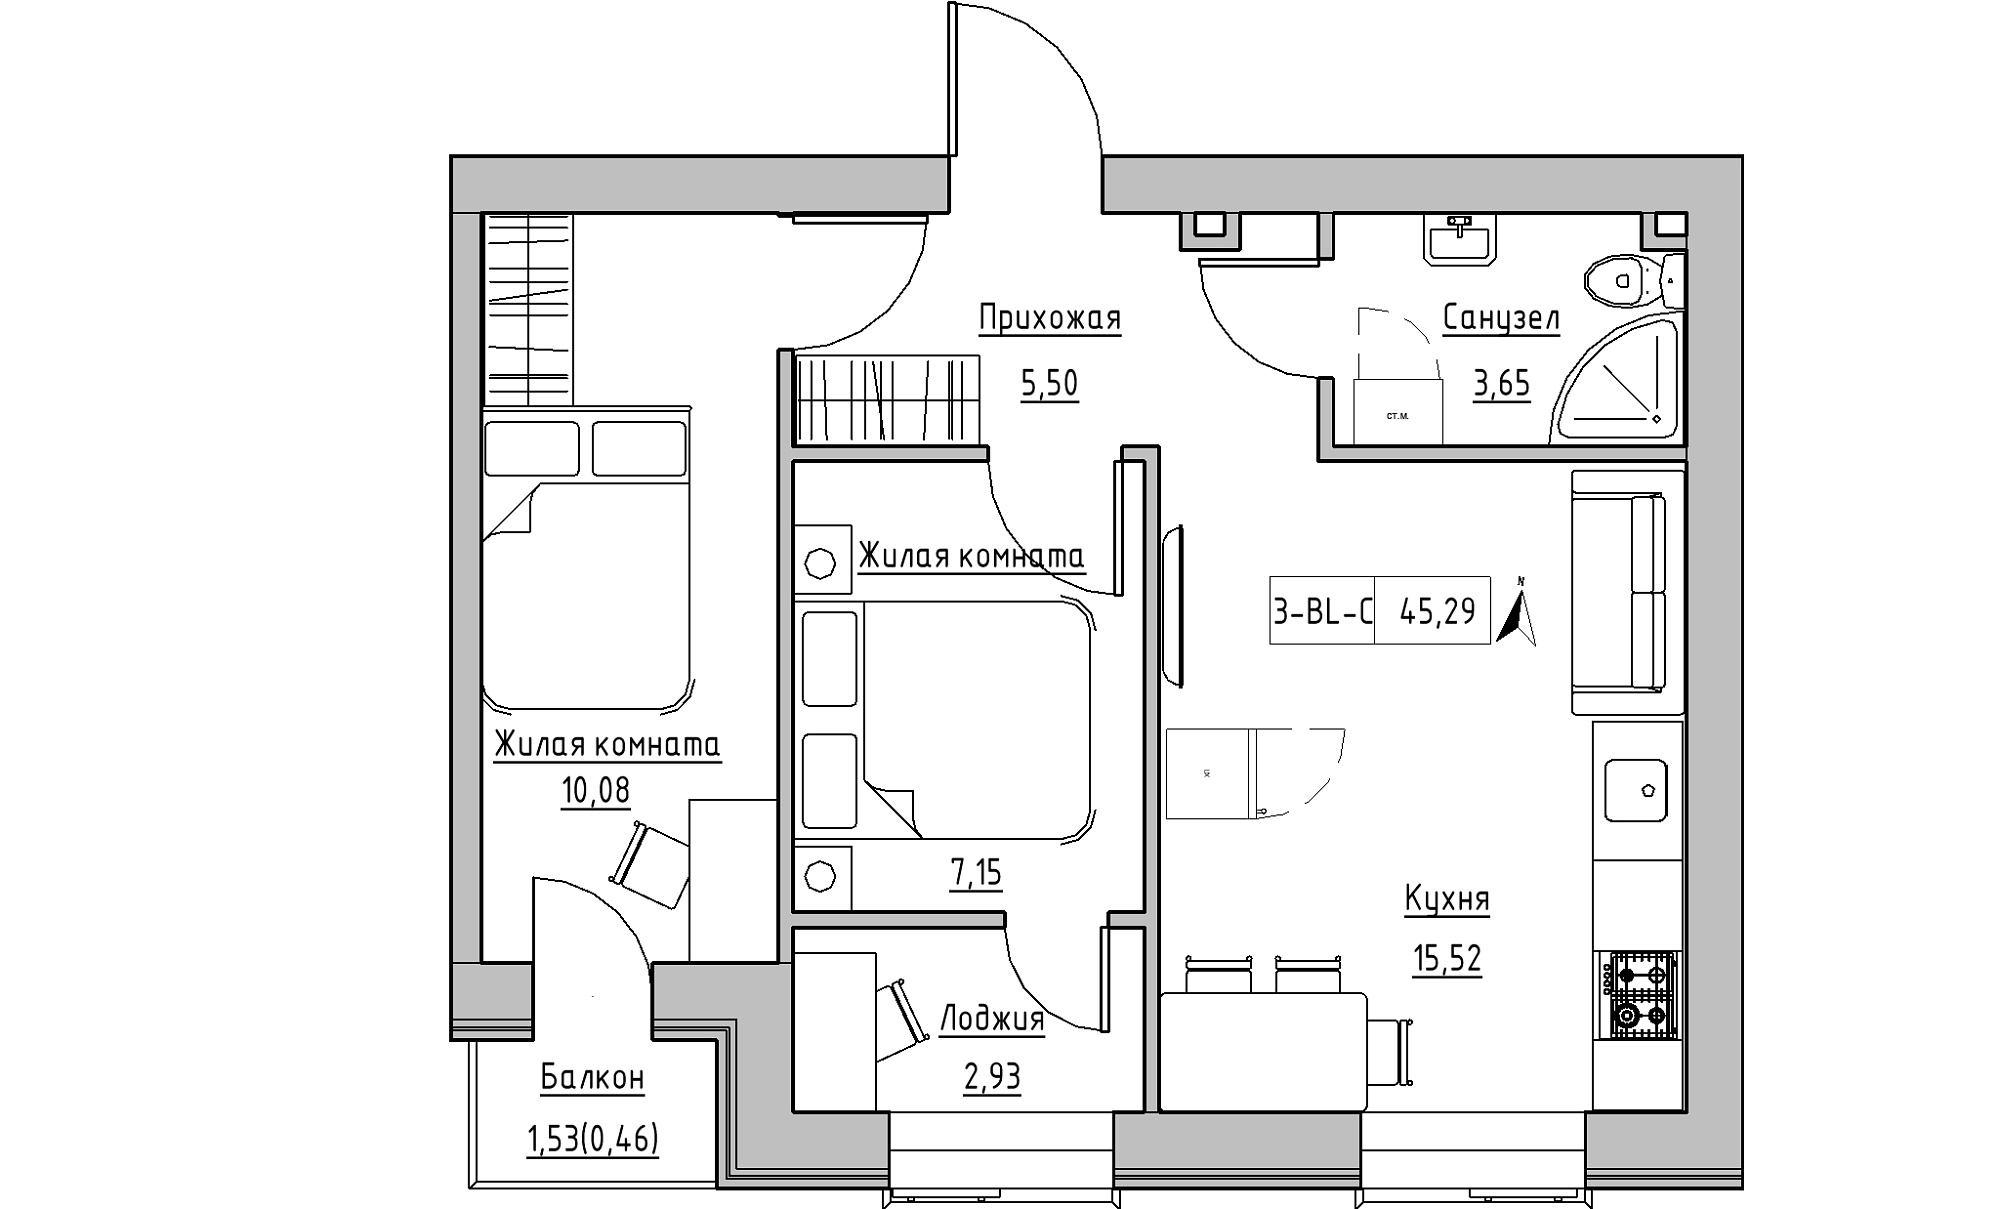 Планировка 2-к квартира площей 45.29м2, KS-016-02/0008.